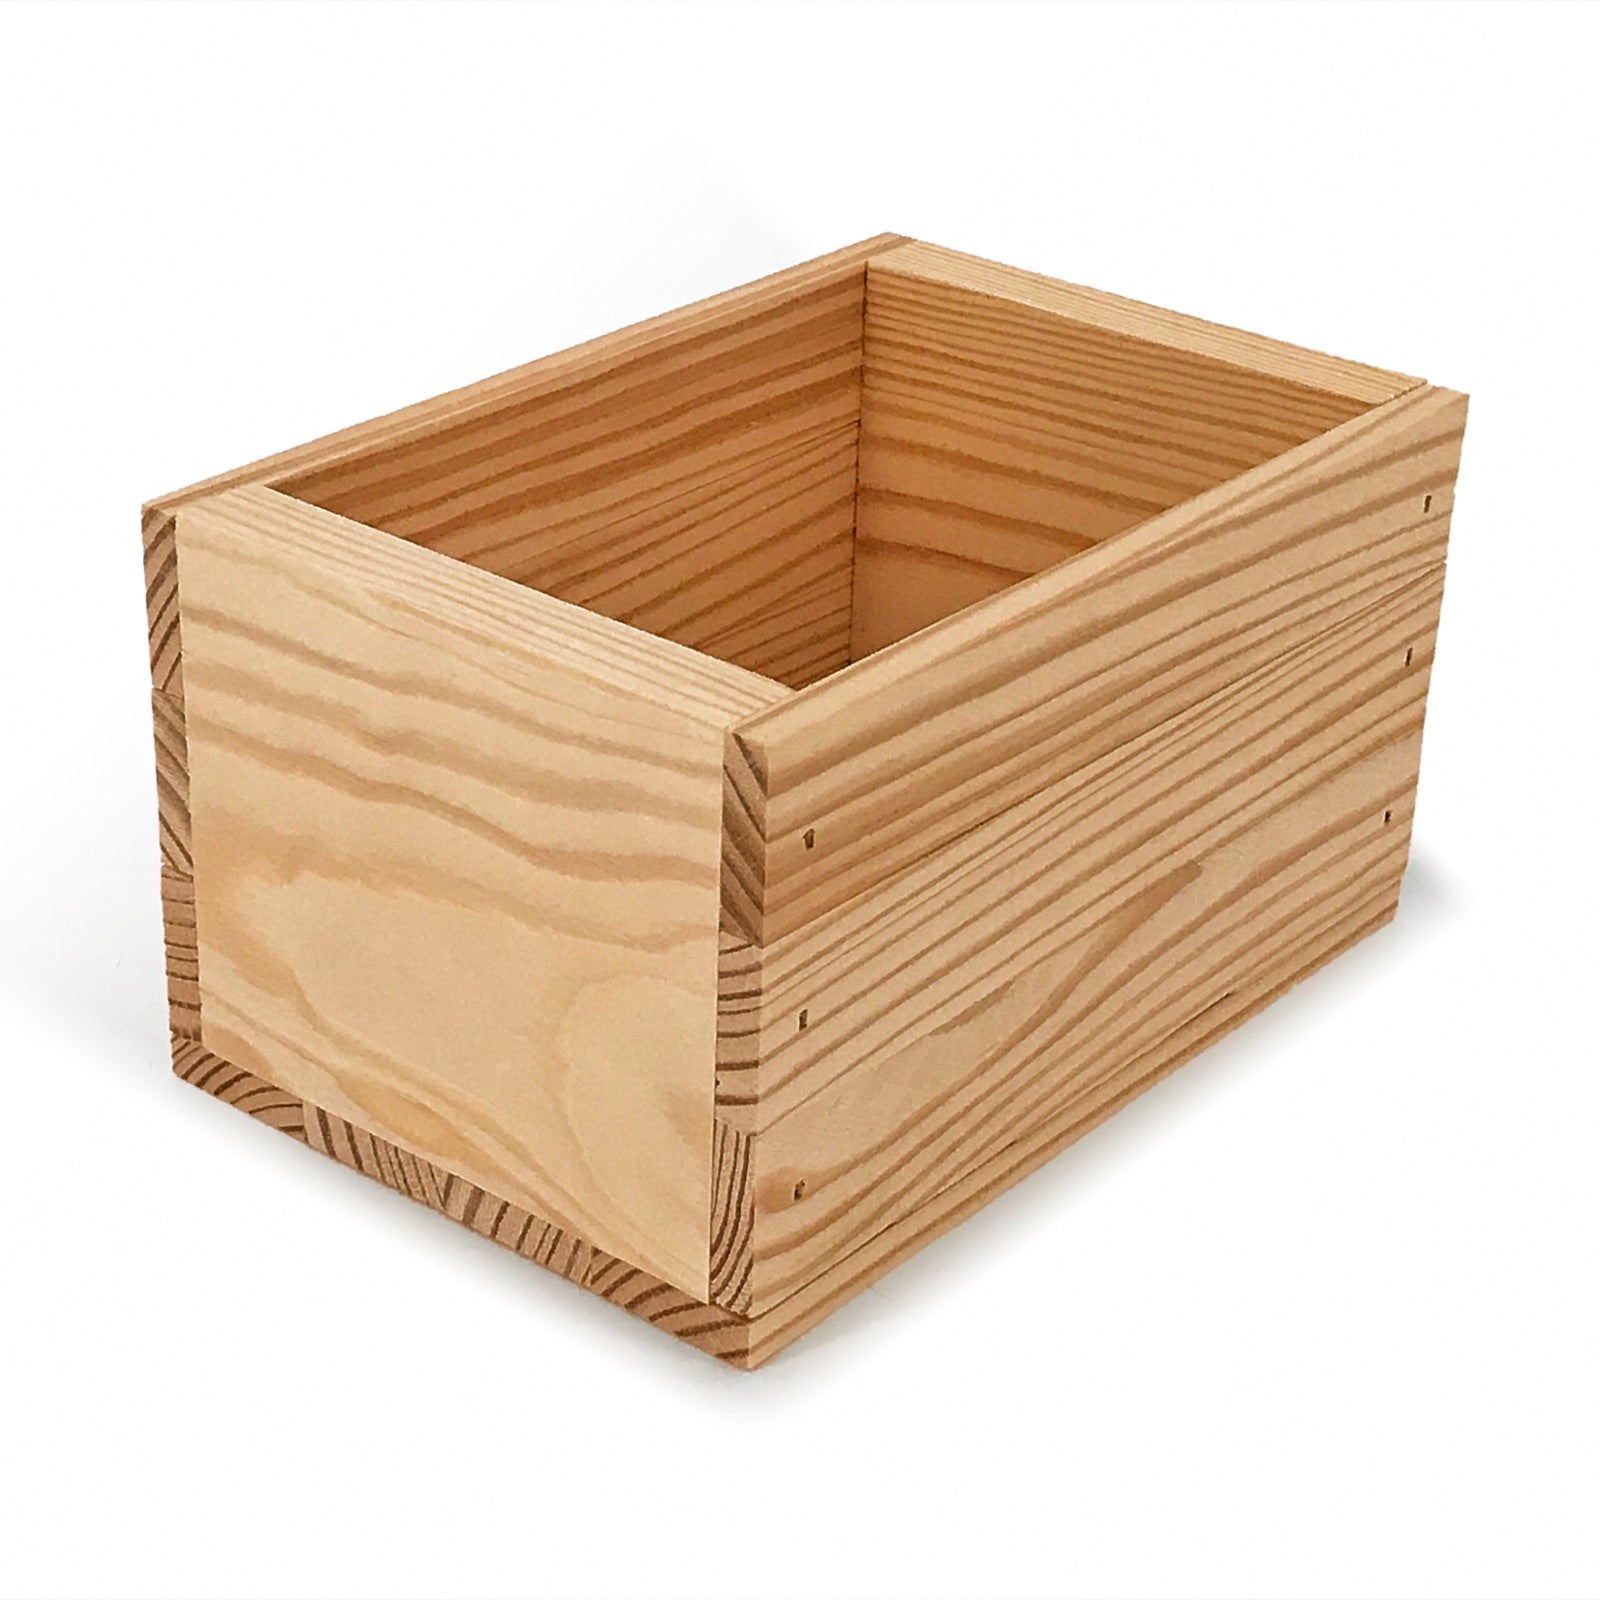 Small wooden crate 7x5x4.25, 6-B2-7.0625-5-4.3125-NX-NW-NL 12-B2-7.0625-5-4.3125-NX-NW-NL 24-B2-7.0625-5-4.3125-NX-NW-NL 48-B2-7.0625-5-4.3125-NX-NW-NL 96-B2-7.0625-5-4.3125-NX-NW-NL